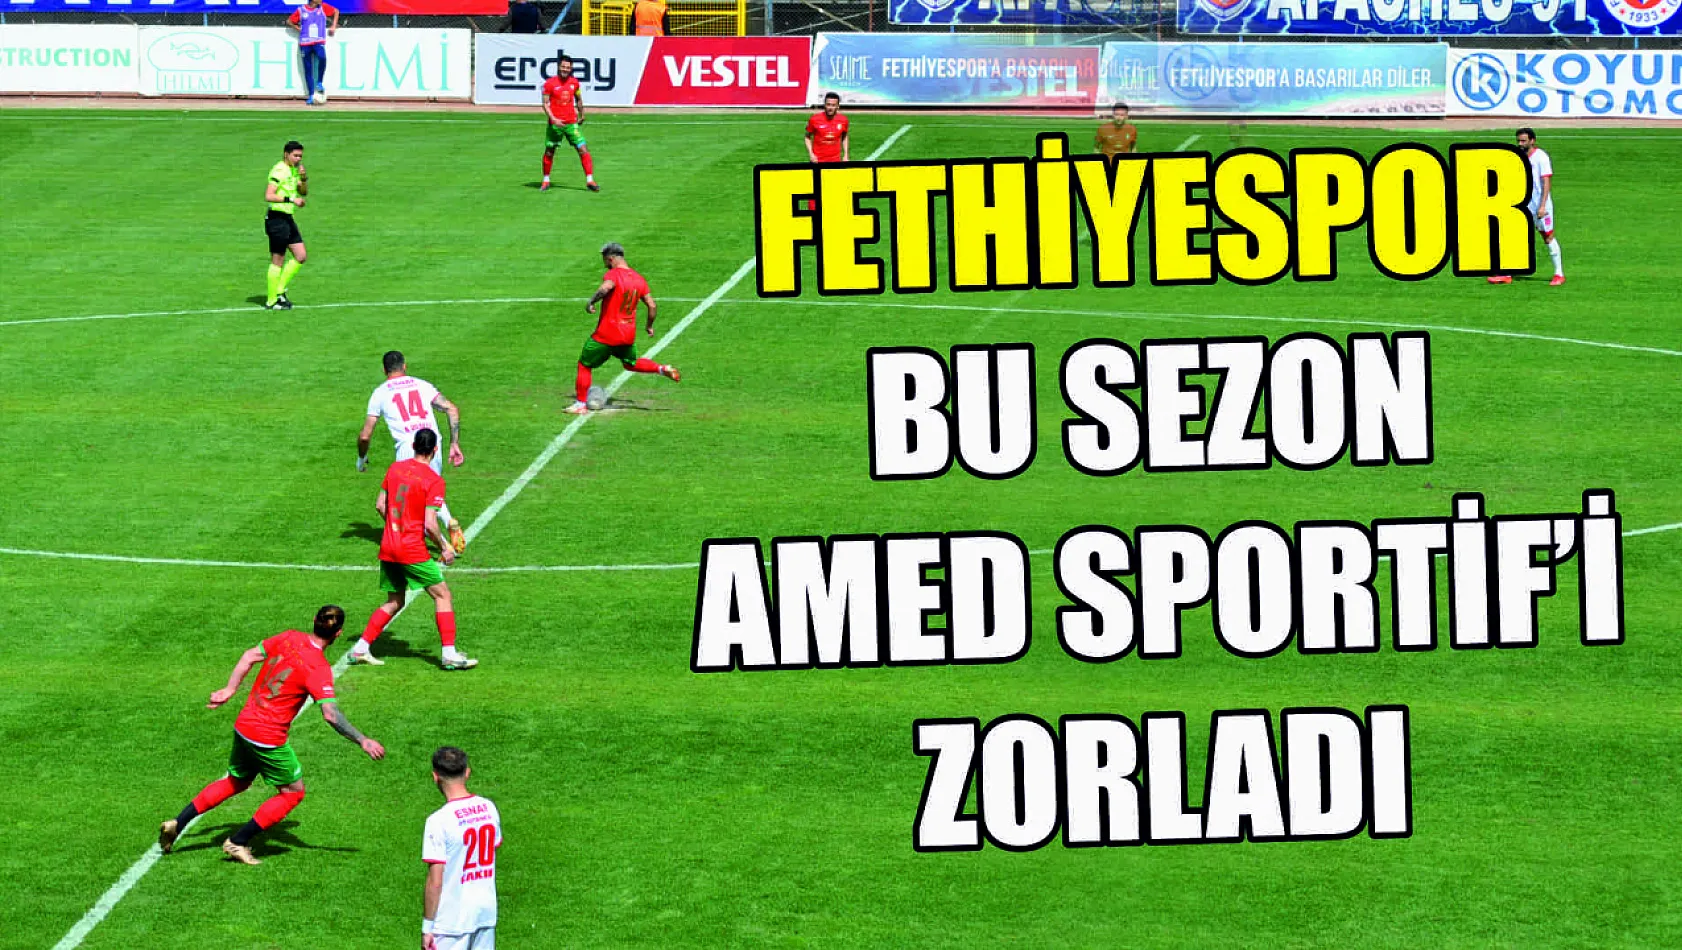 Fethiyespor, bu sezon Amed Sportif'i zorladı